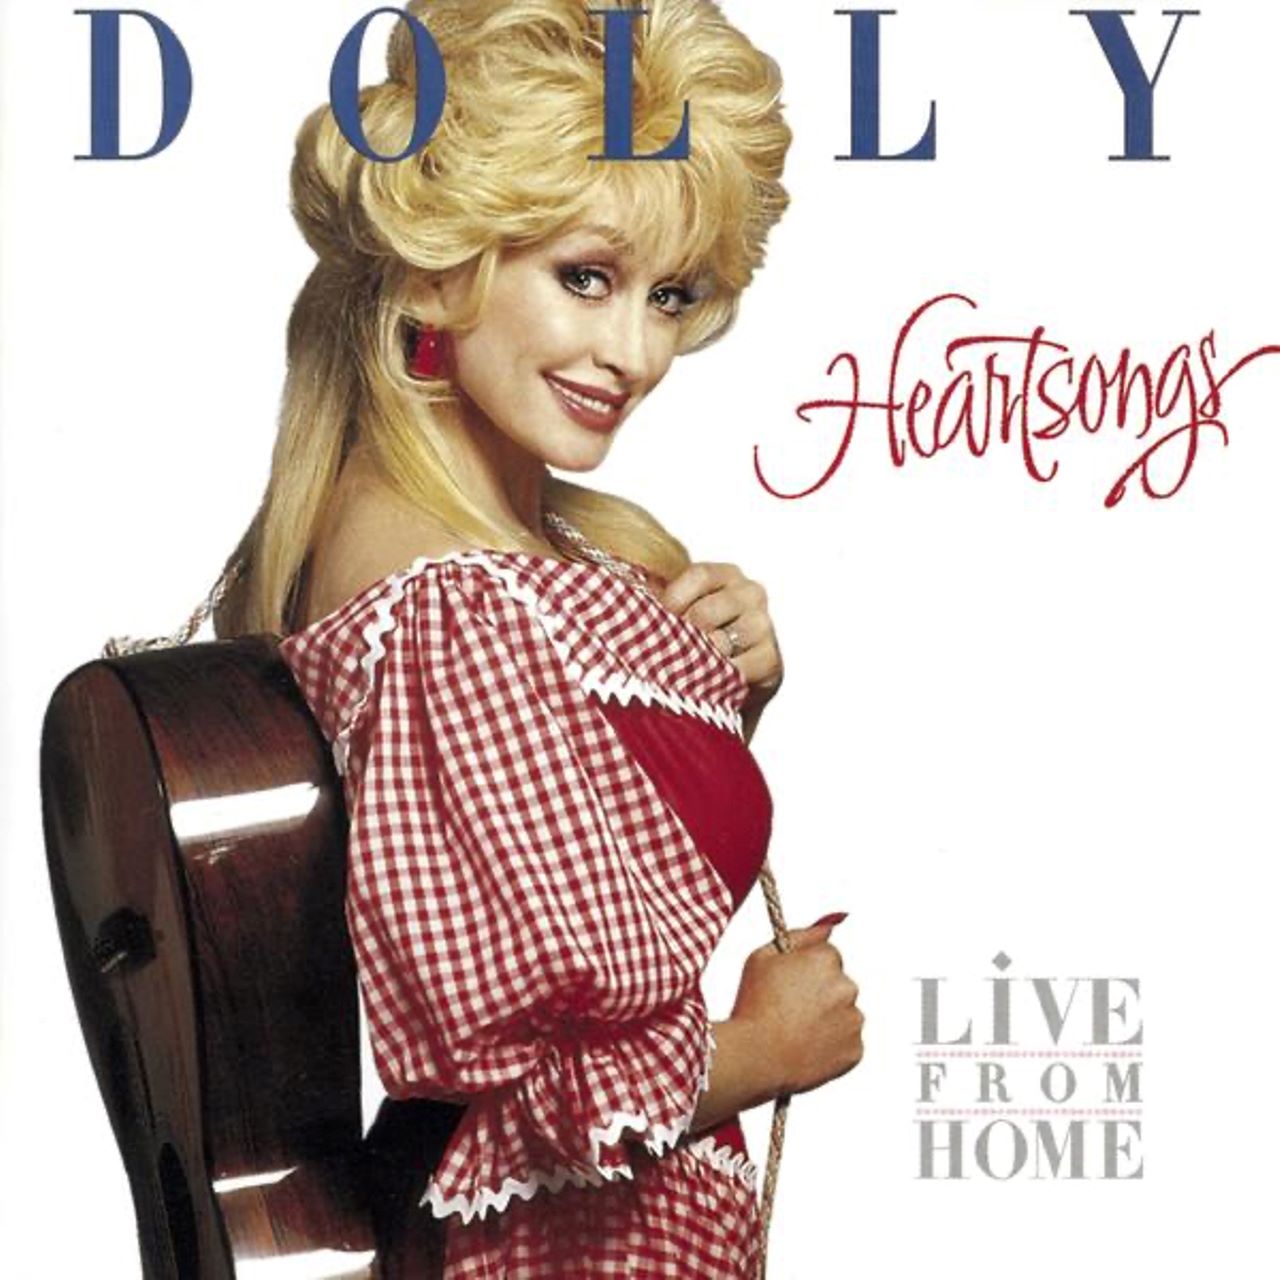 Dolly Parton – Heartsongs cover album